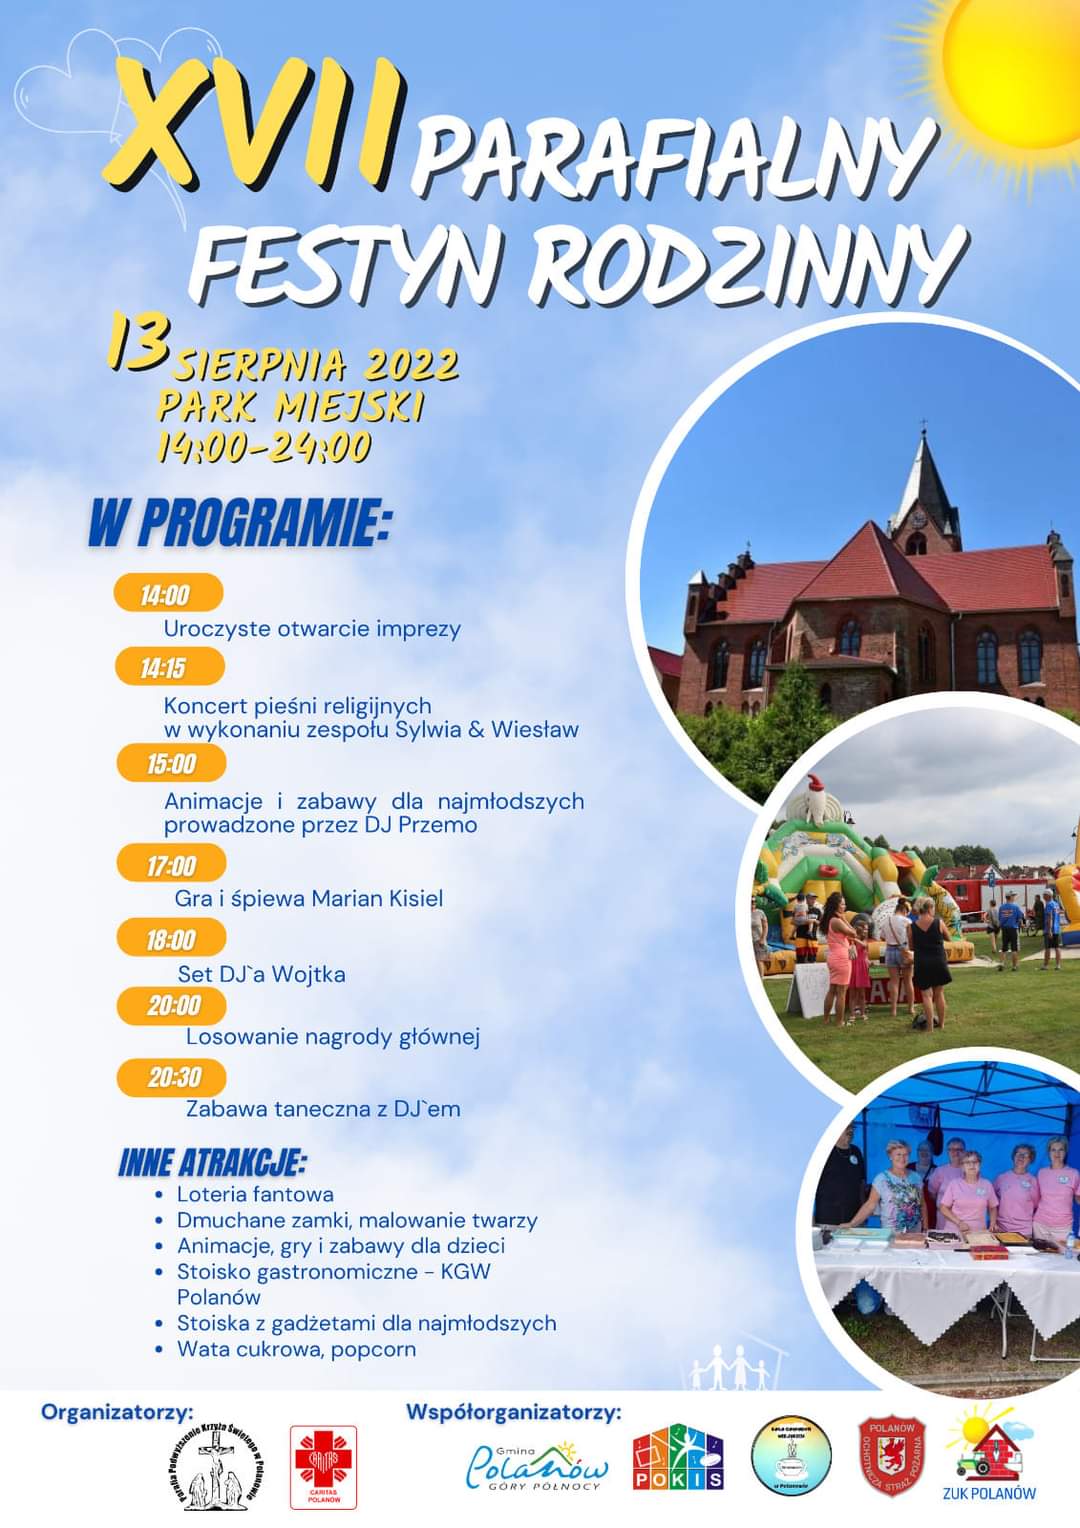 Plakat zapraszający na 17 parafialny festyn rodzinny 13 sierpnia 2022 w Parku Miesjkim w Polanowie od godziny 14